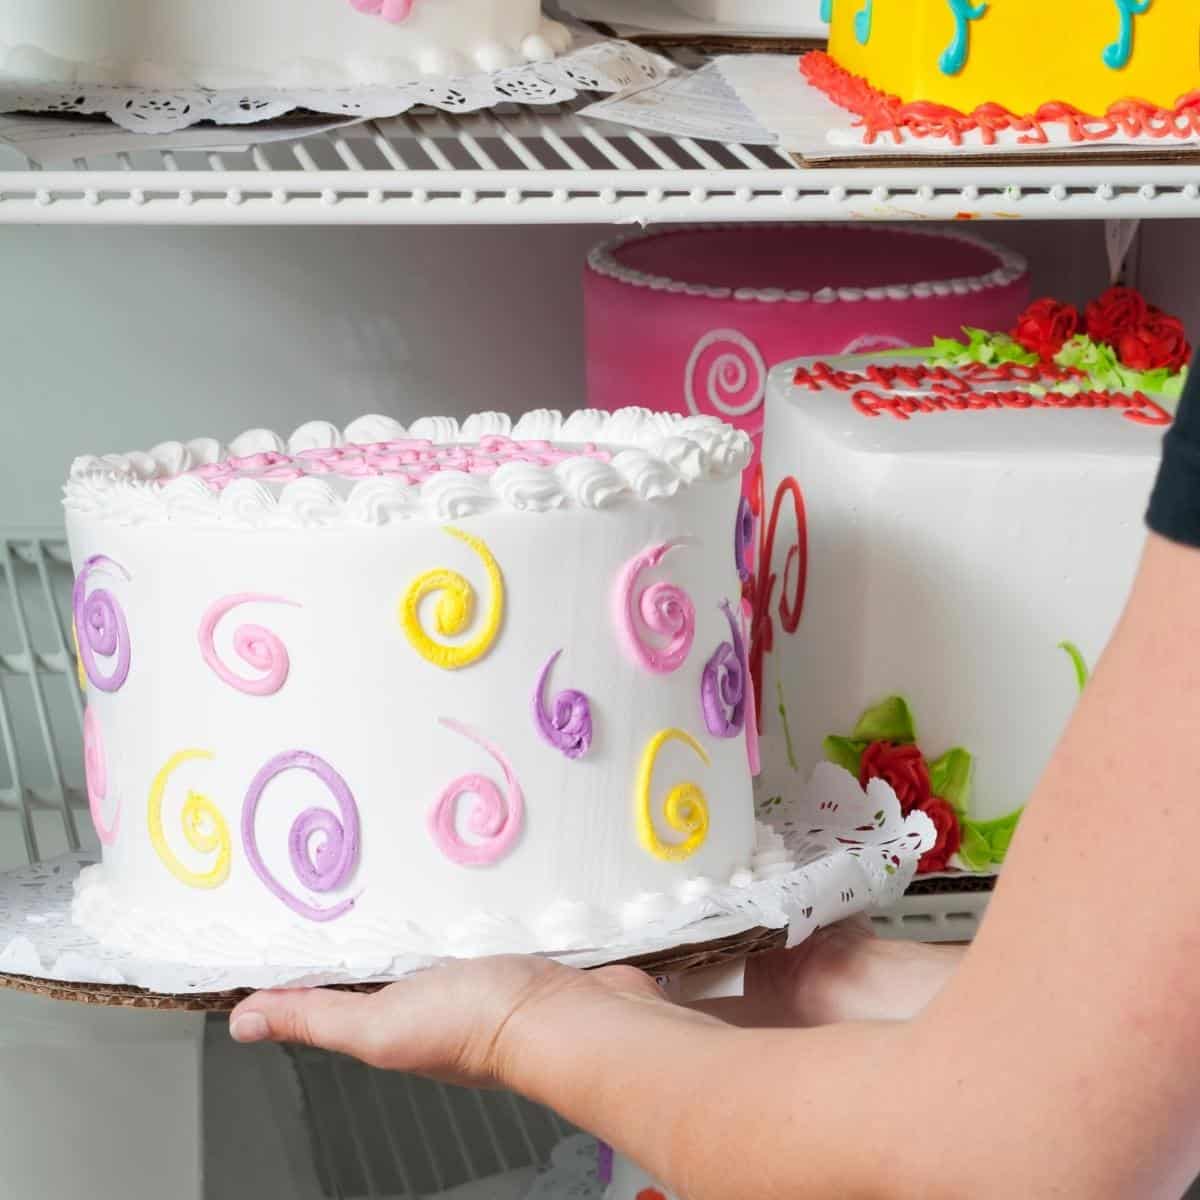 https://iscreamforbuttercream.com/wp-content/uploads/2022/10/storing-birthday-cake-in-fridge.jpg